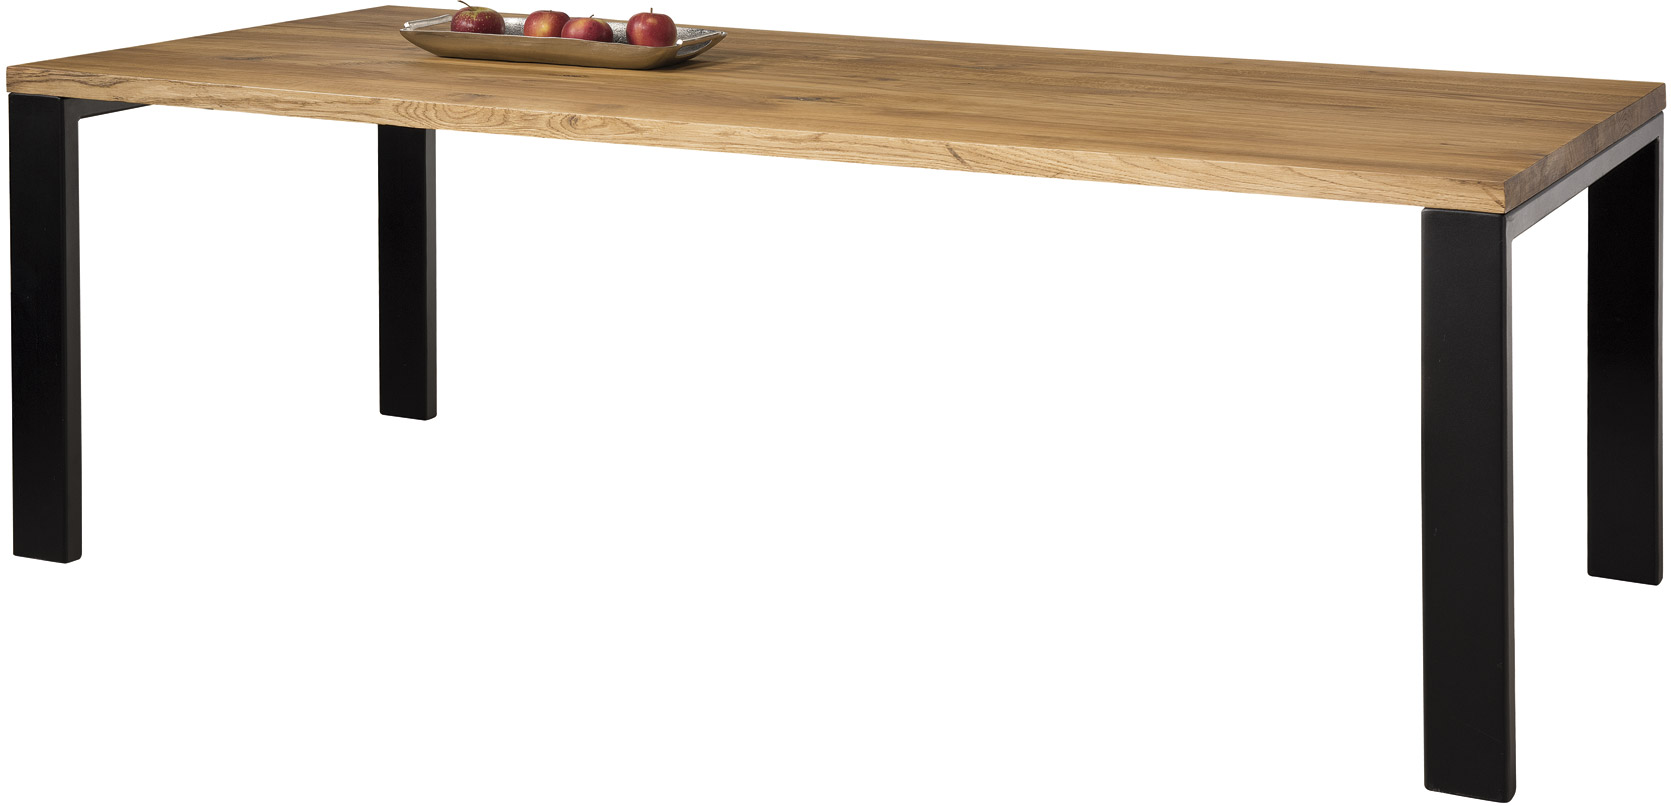 Stół drewniany Udine | Remo Meble